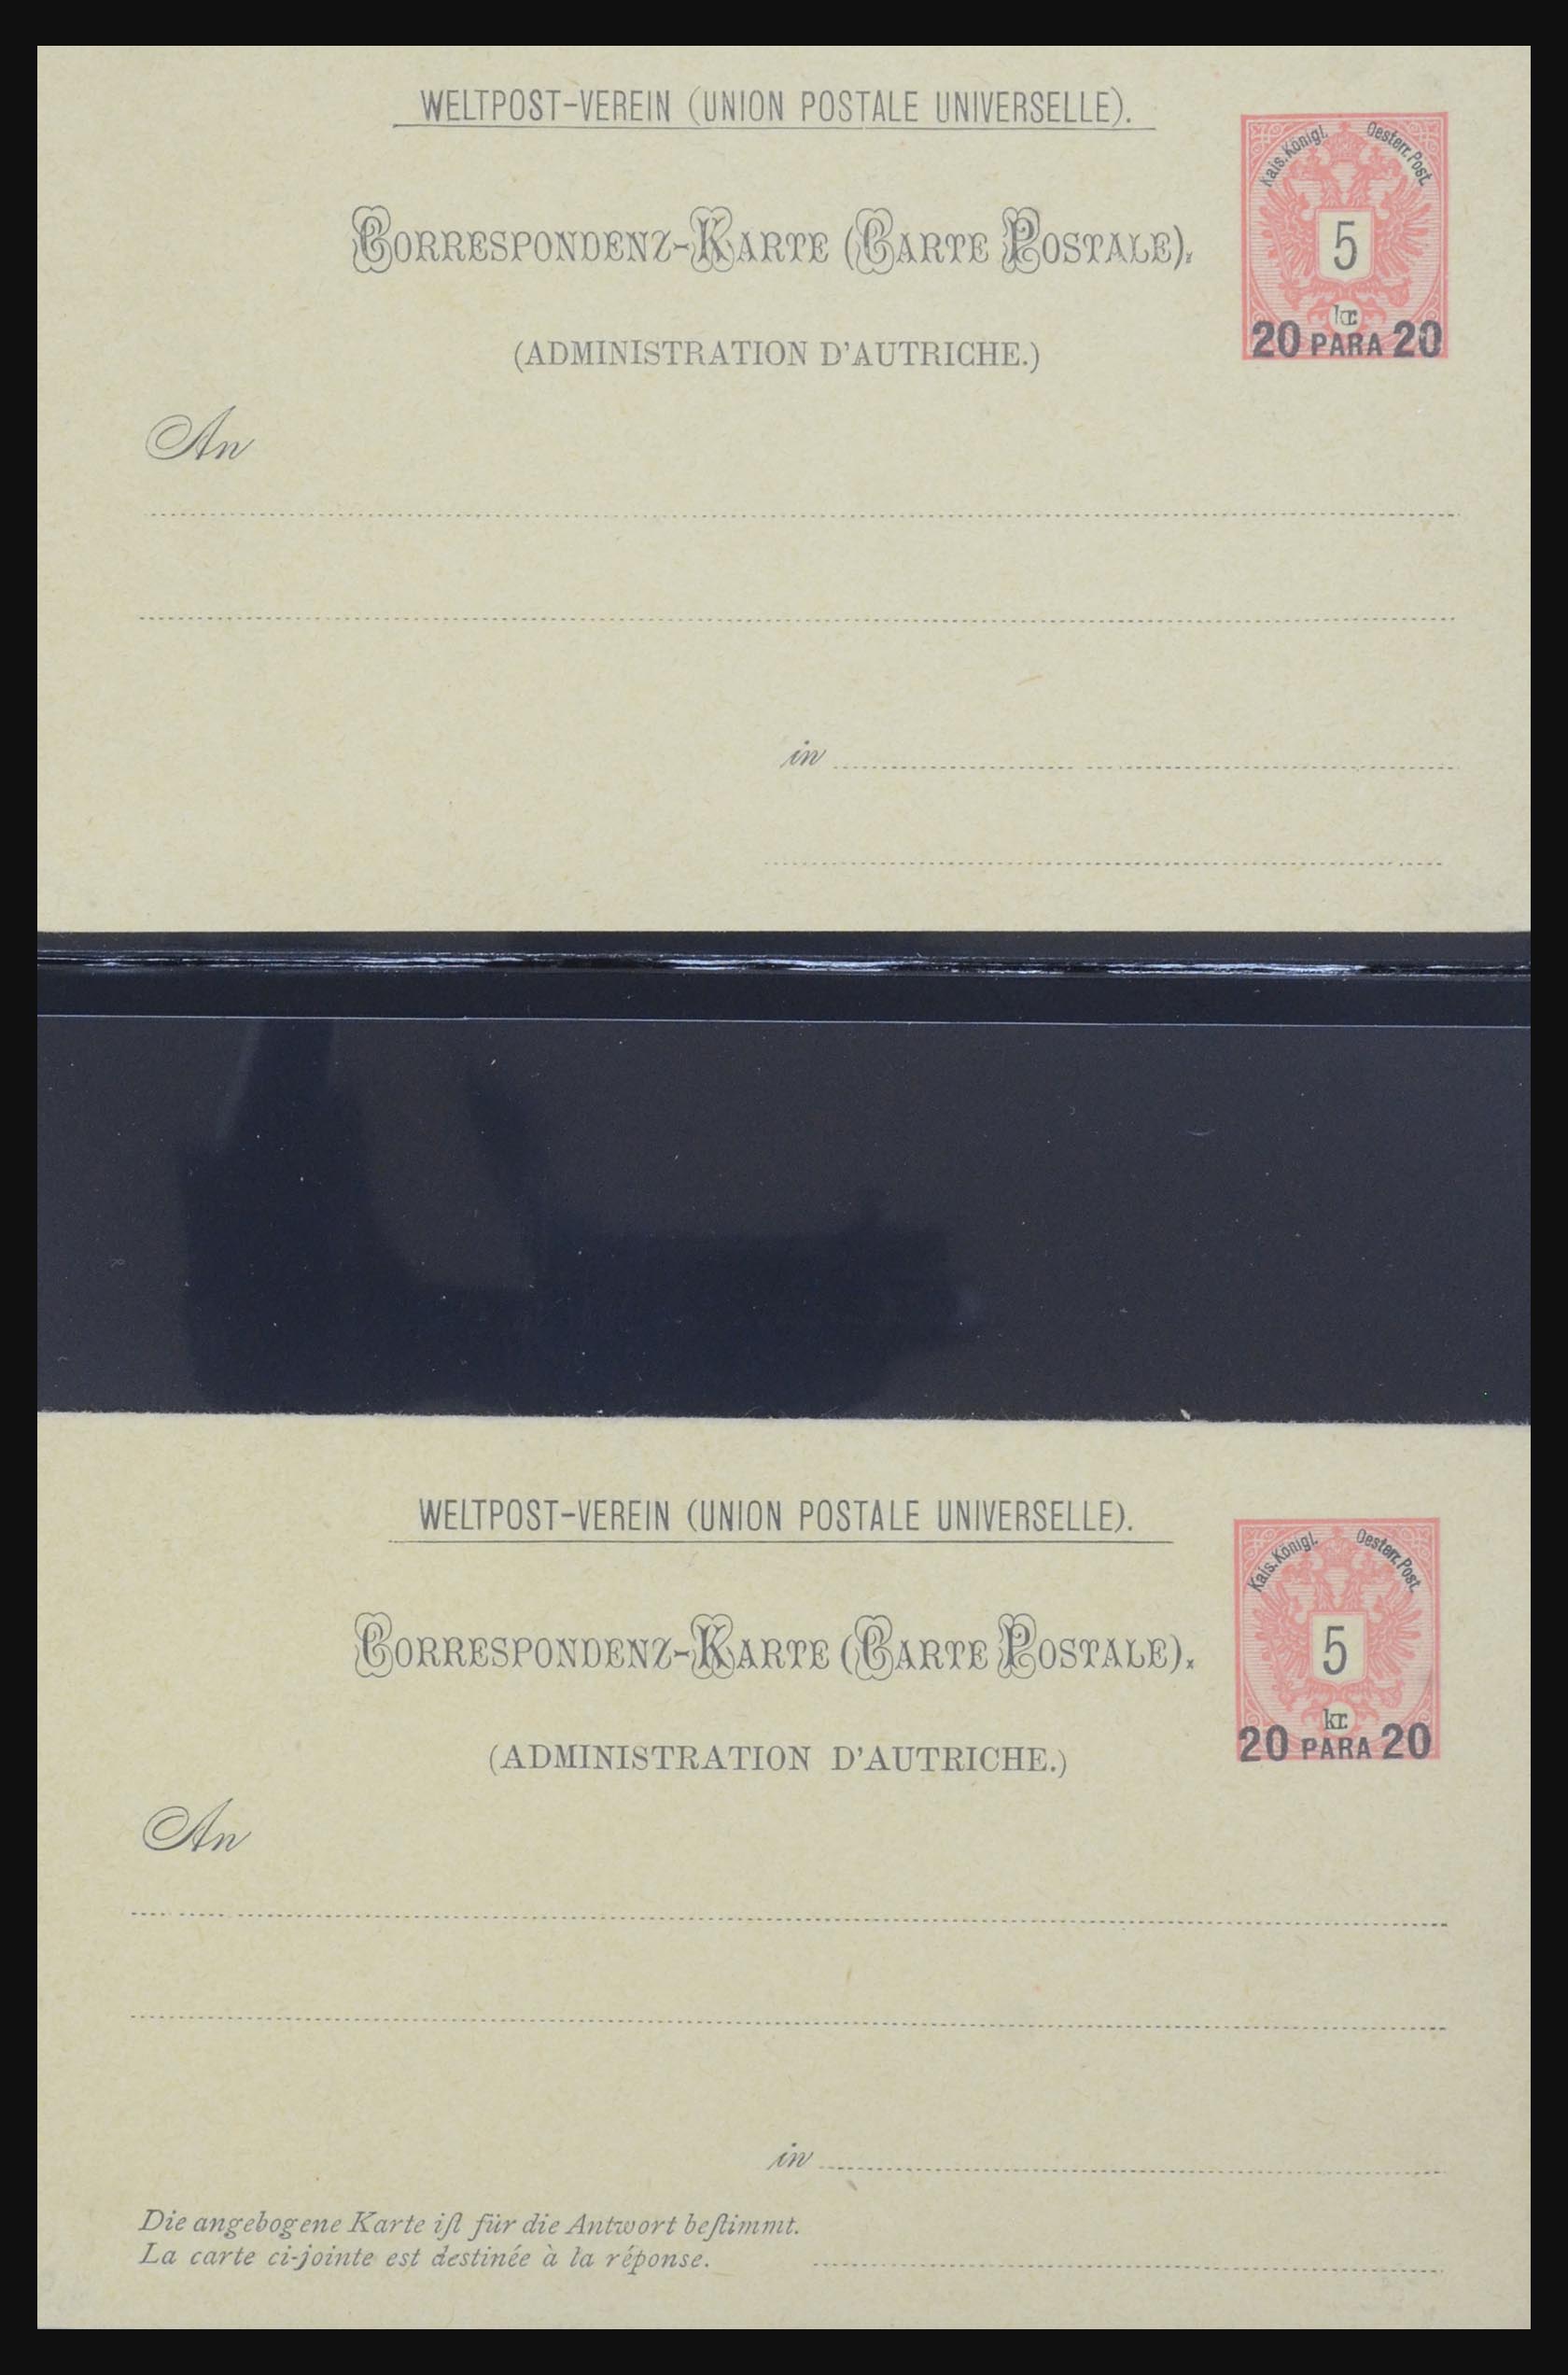 32254 0032 - 32254 Oostenrijk brieven vanaf 1800.